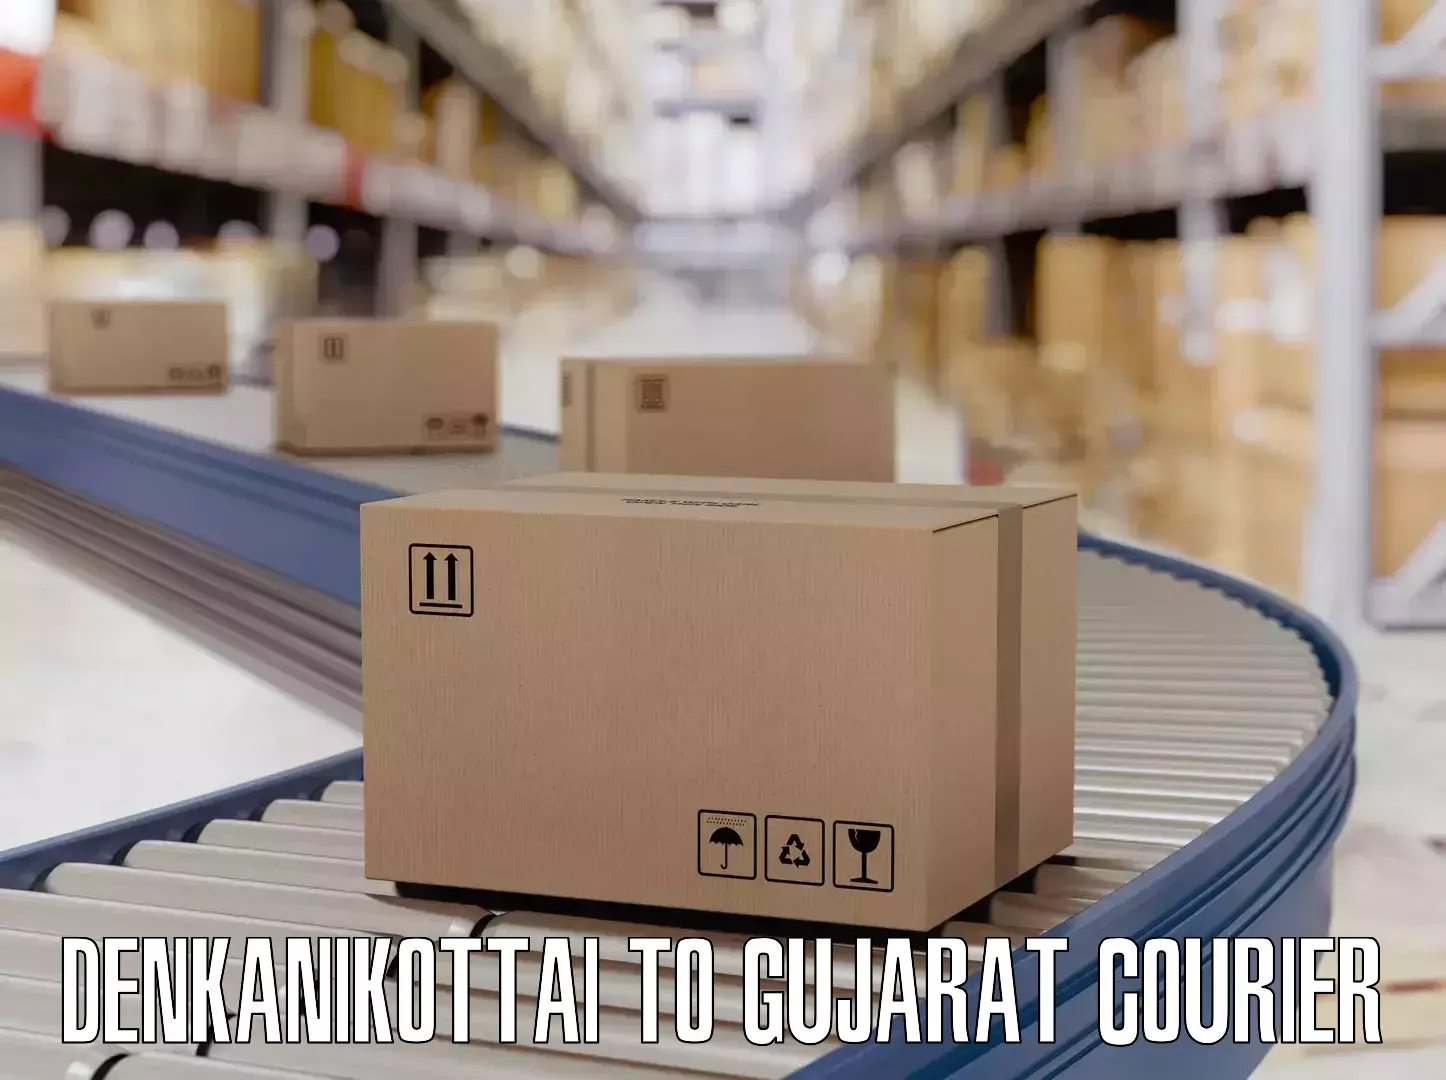 Luggage delivery app Denkanikottai to Gujarat